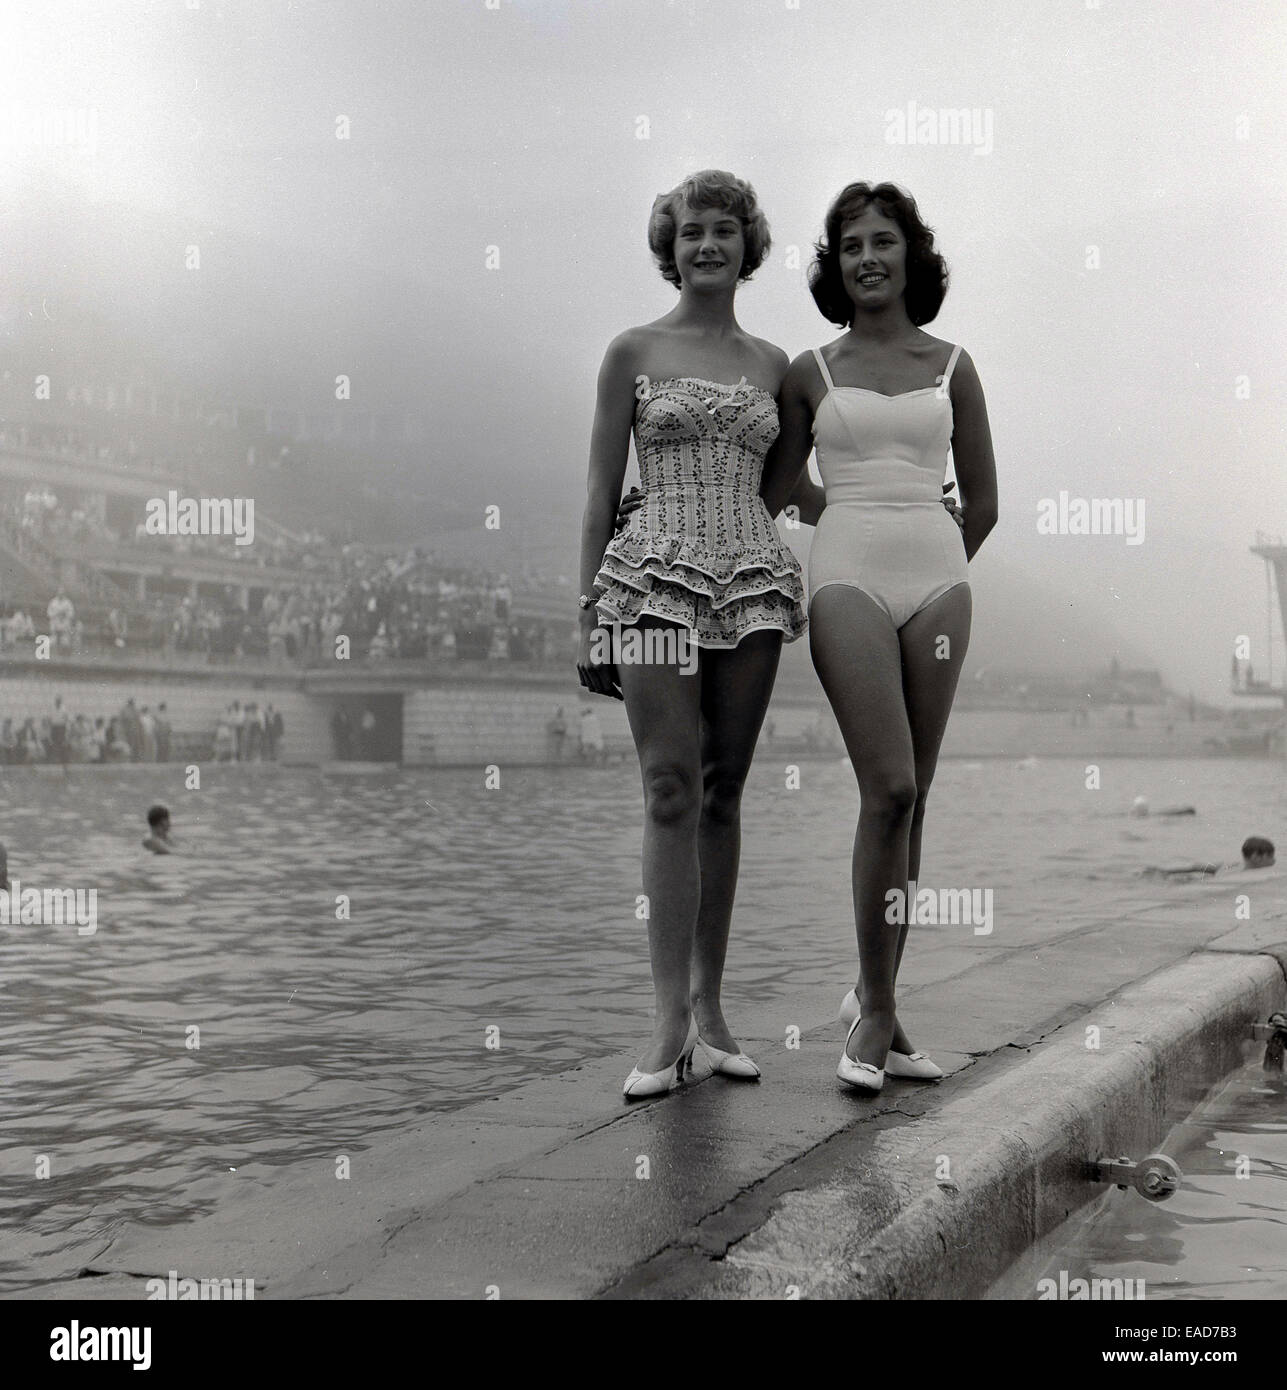 Histórico, 1950, dos mujeres del competidor en un bañador o un concurso de  belleza, de pie junto al lado de una piscina al aire libre Fotografía de  stock - Alamy